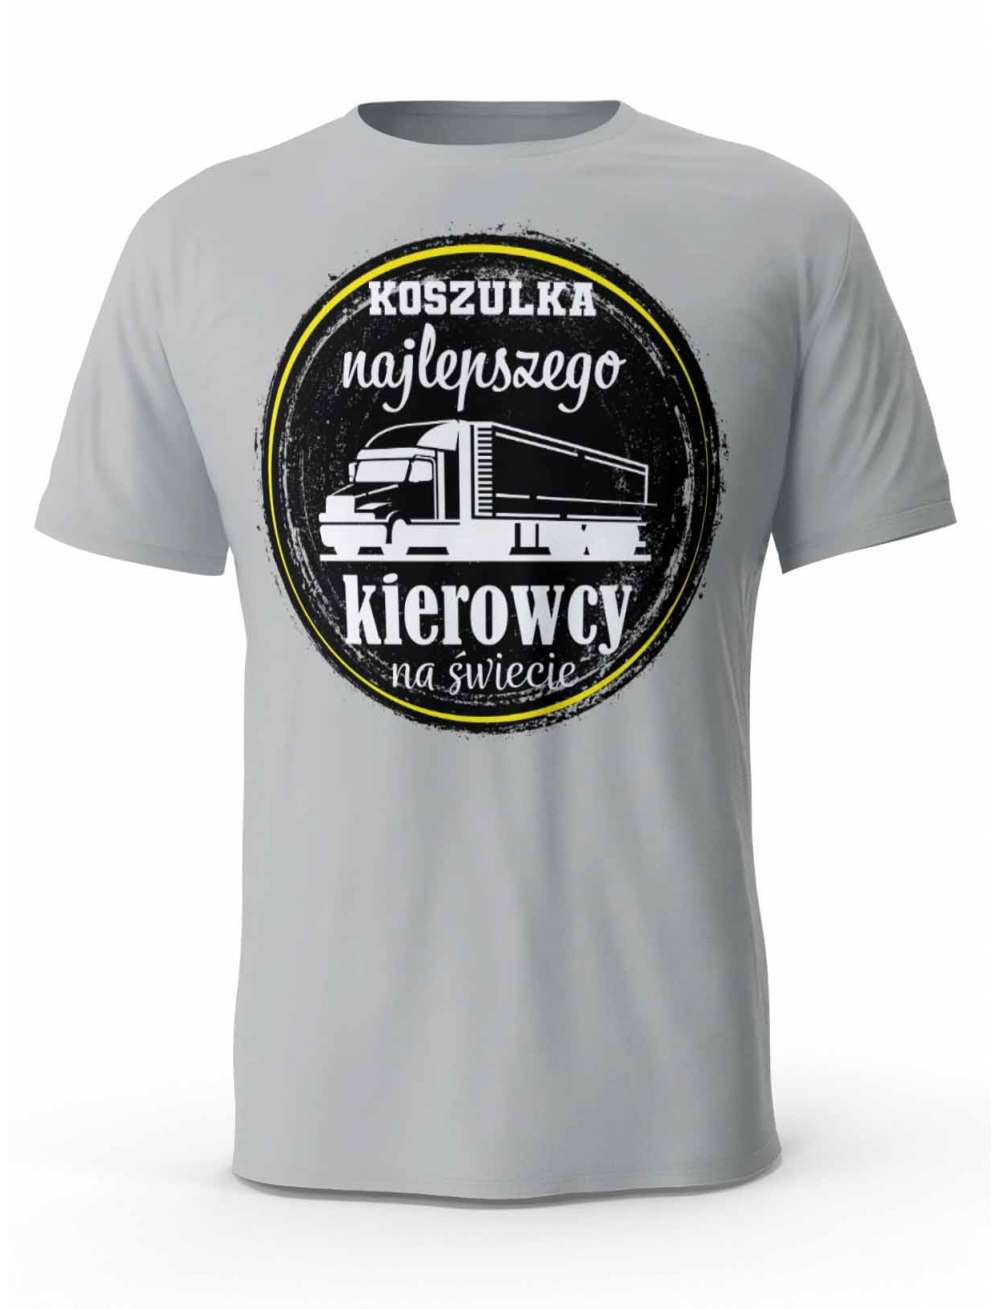 Koszulka Najlepszego Kierowcy na Świecie, T-shirt Męski, Prezent